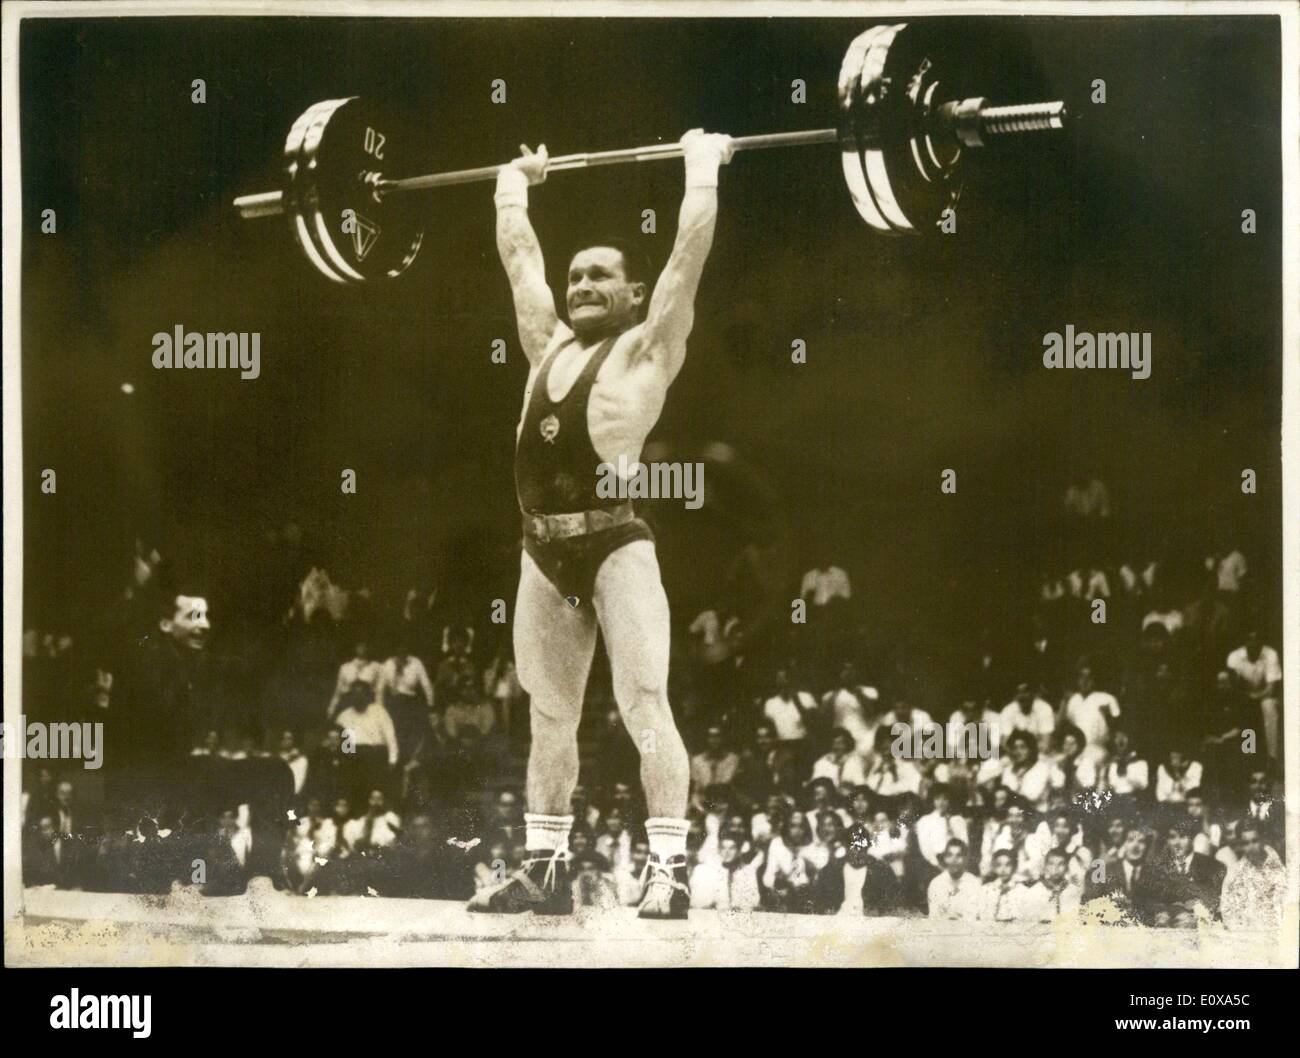 28 octobre, 1965 - Poids hongrois lifer world champion poids Bantam : Hongrois Imre Foldi a remporté le titre de champion du monde poids Bantam le au championnat du monde de levage de poids aujourd'hui détenu à Téhéran. Photo montre Imre Foldi en action. Banque D'Images